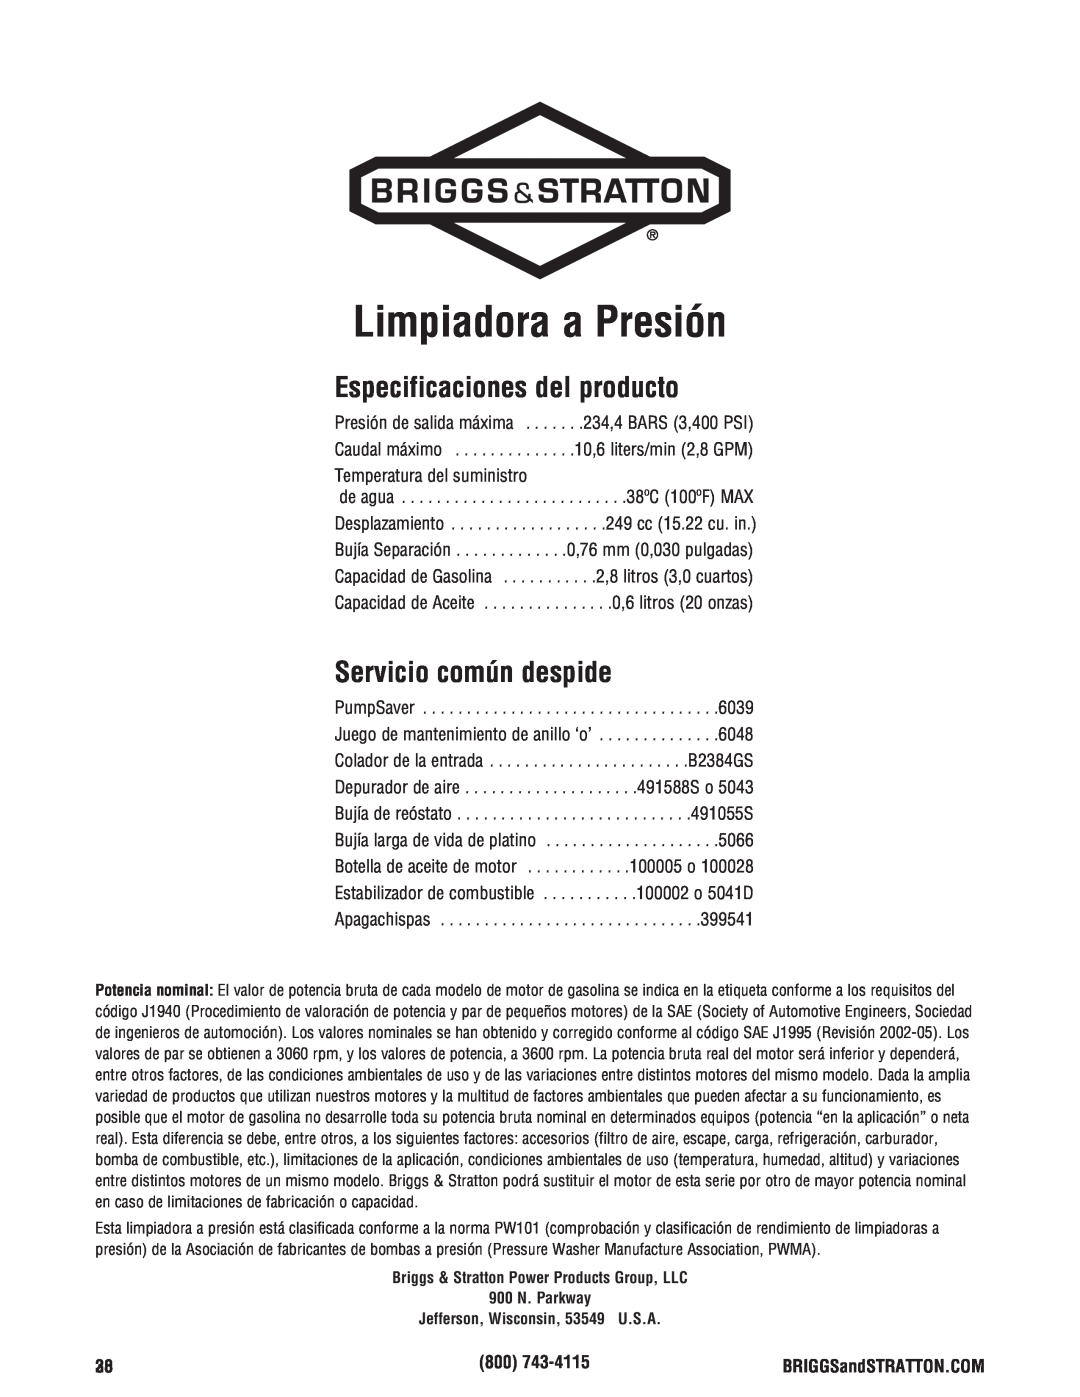 Briggs & Stratton 020364-0 manual Limpiadora a Presión, Especificaciones del producto, Servicio común despide 